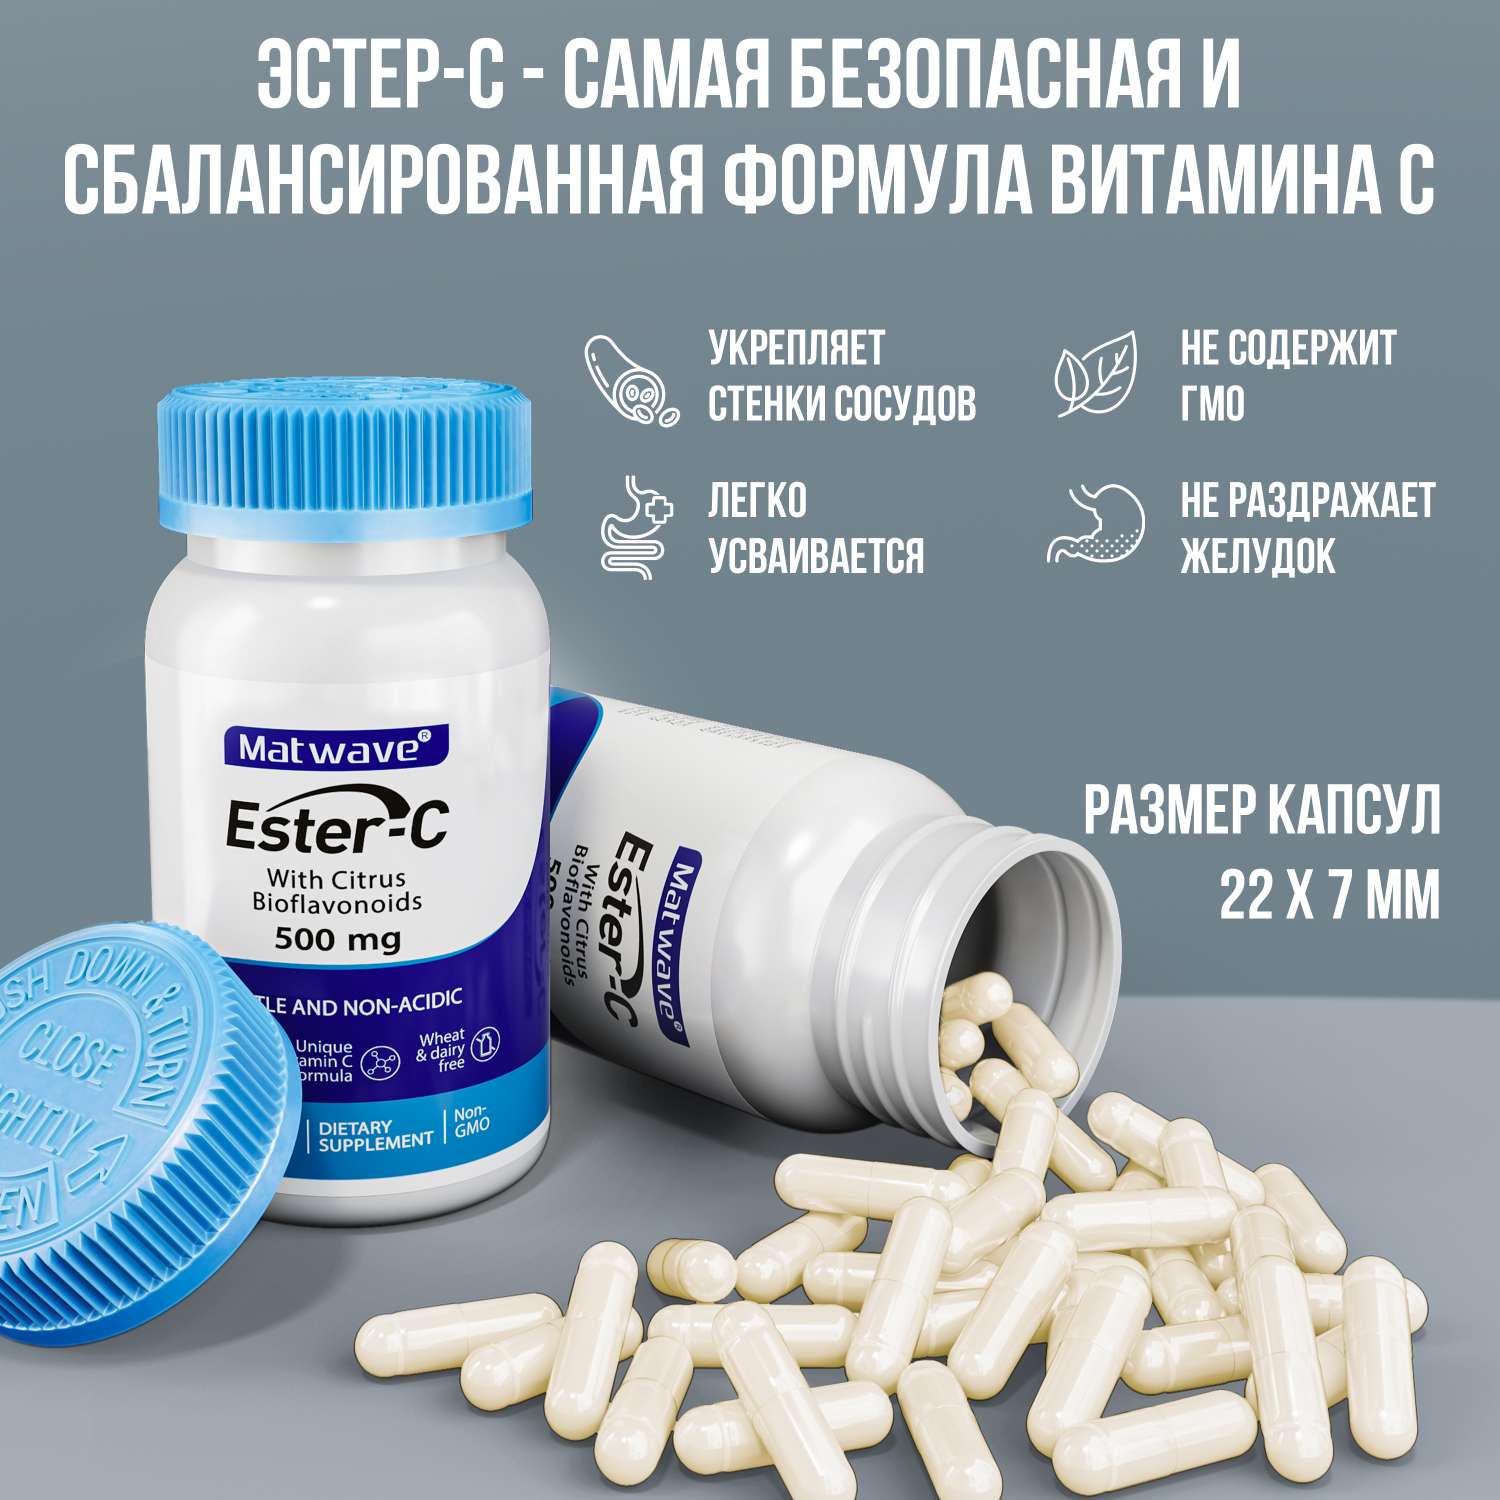 Витамин С Matwave Ester-C Эстер С 500 mg 60 капсул комплект 2 упаковки - фото 3